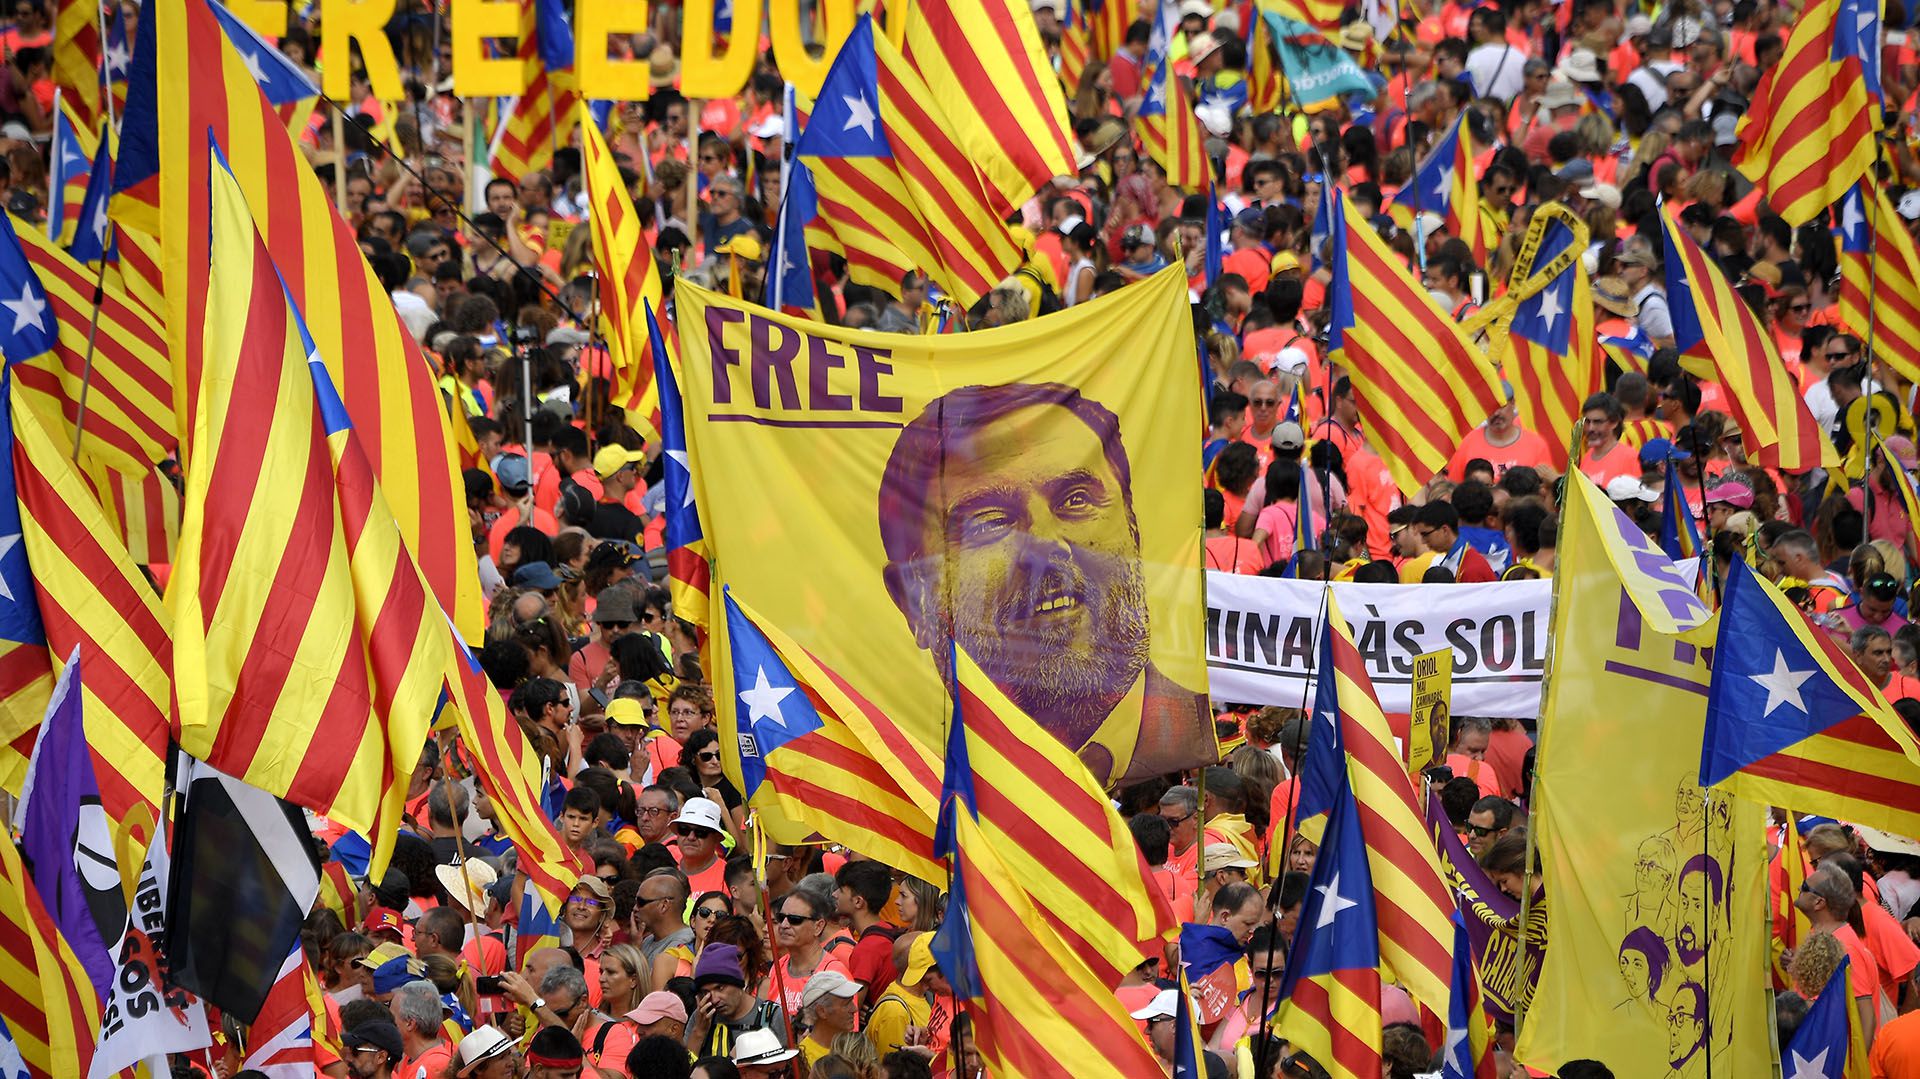 Manifestantes sostienen un estandarte que exige libertad para el dirigente encarcelado catalán Oriol Junqueras mientras se reúnen para participar en una manifestación independentista en Barcelon (LLUIS GENE / AFP)